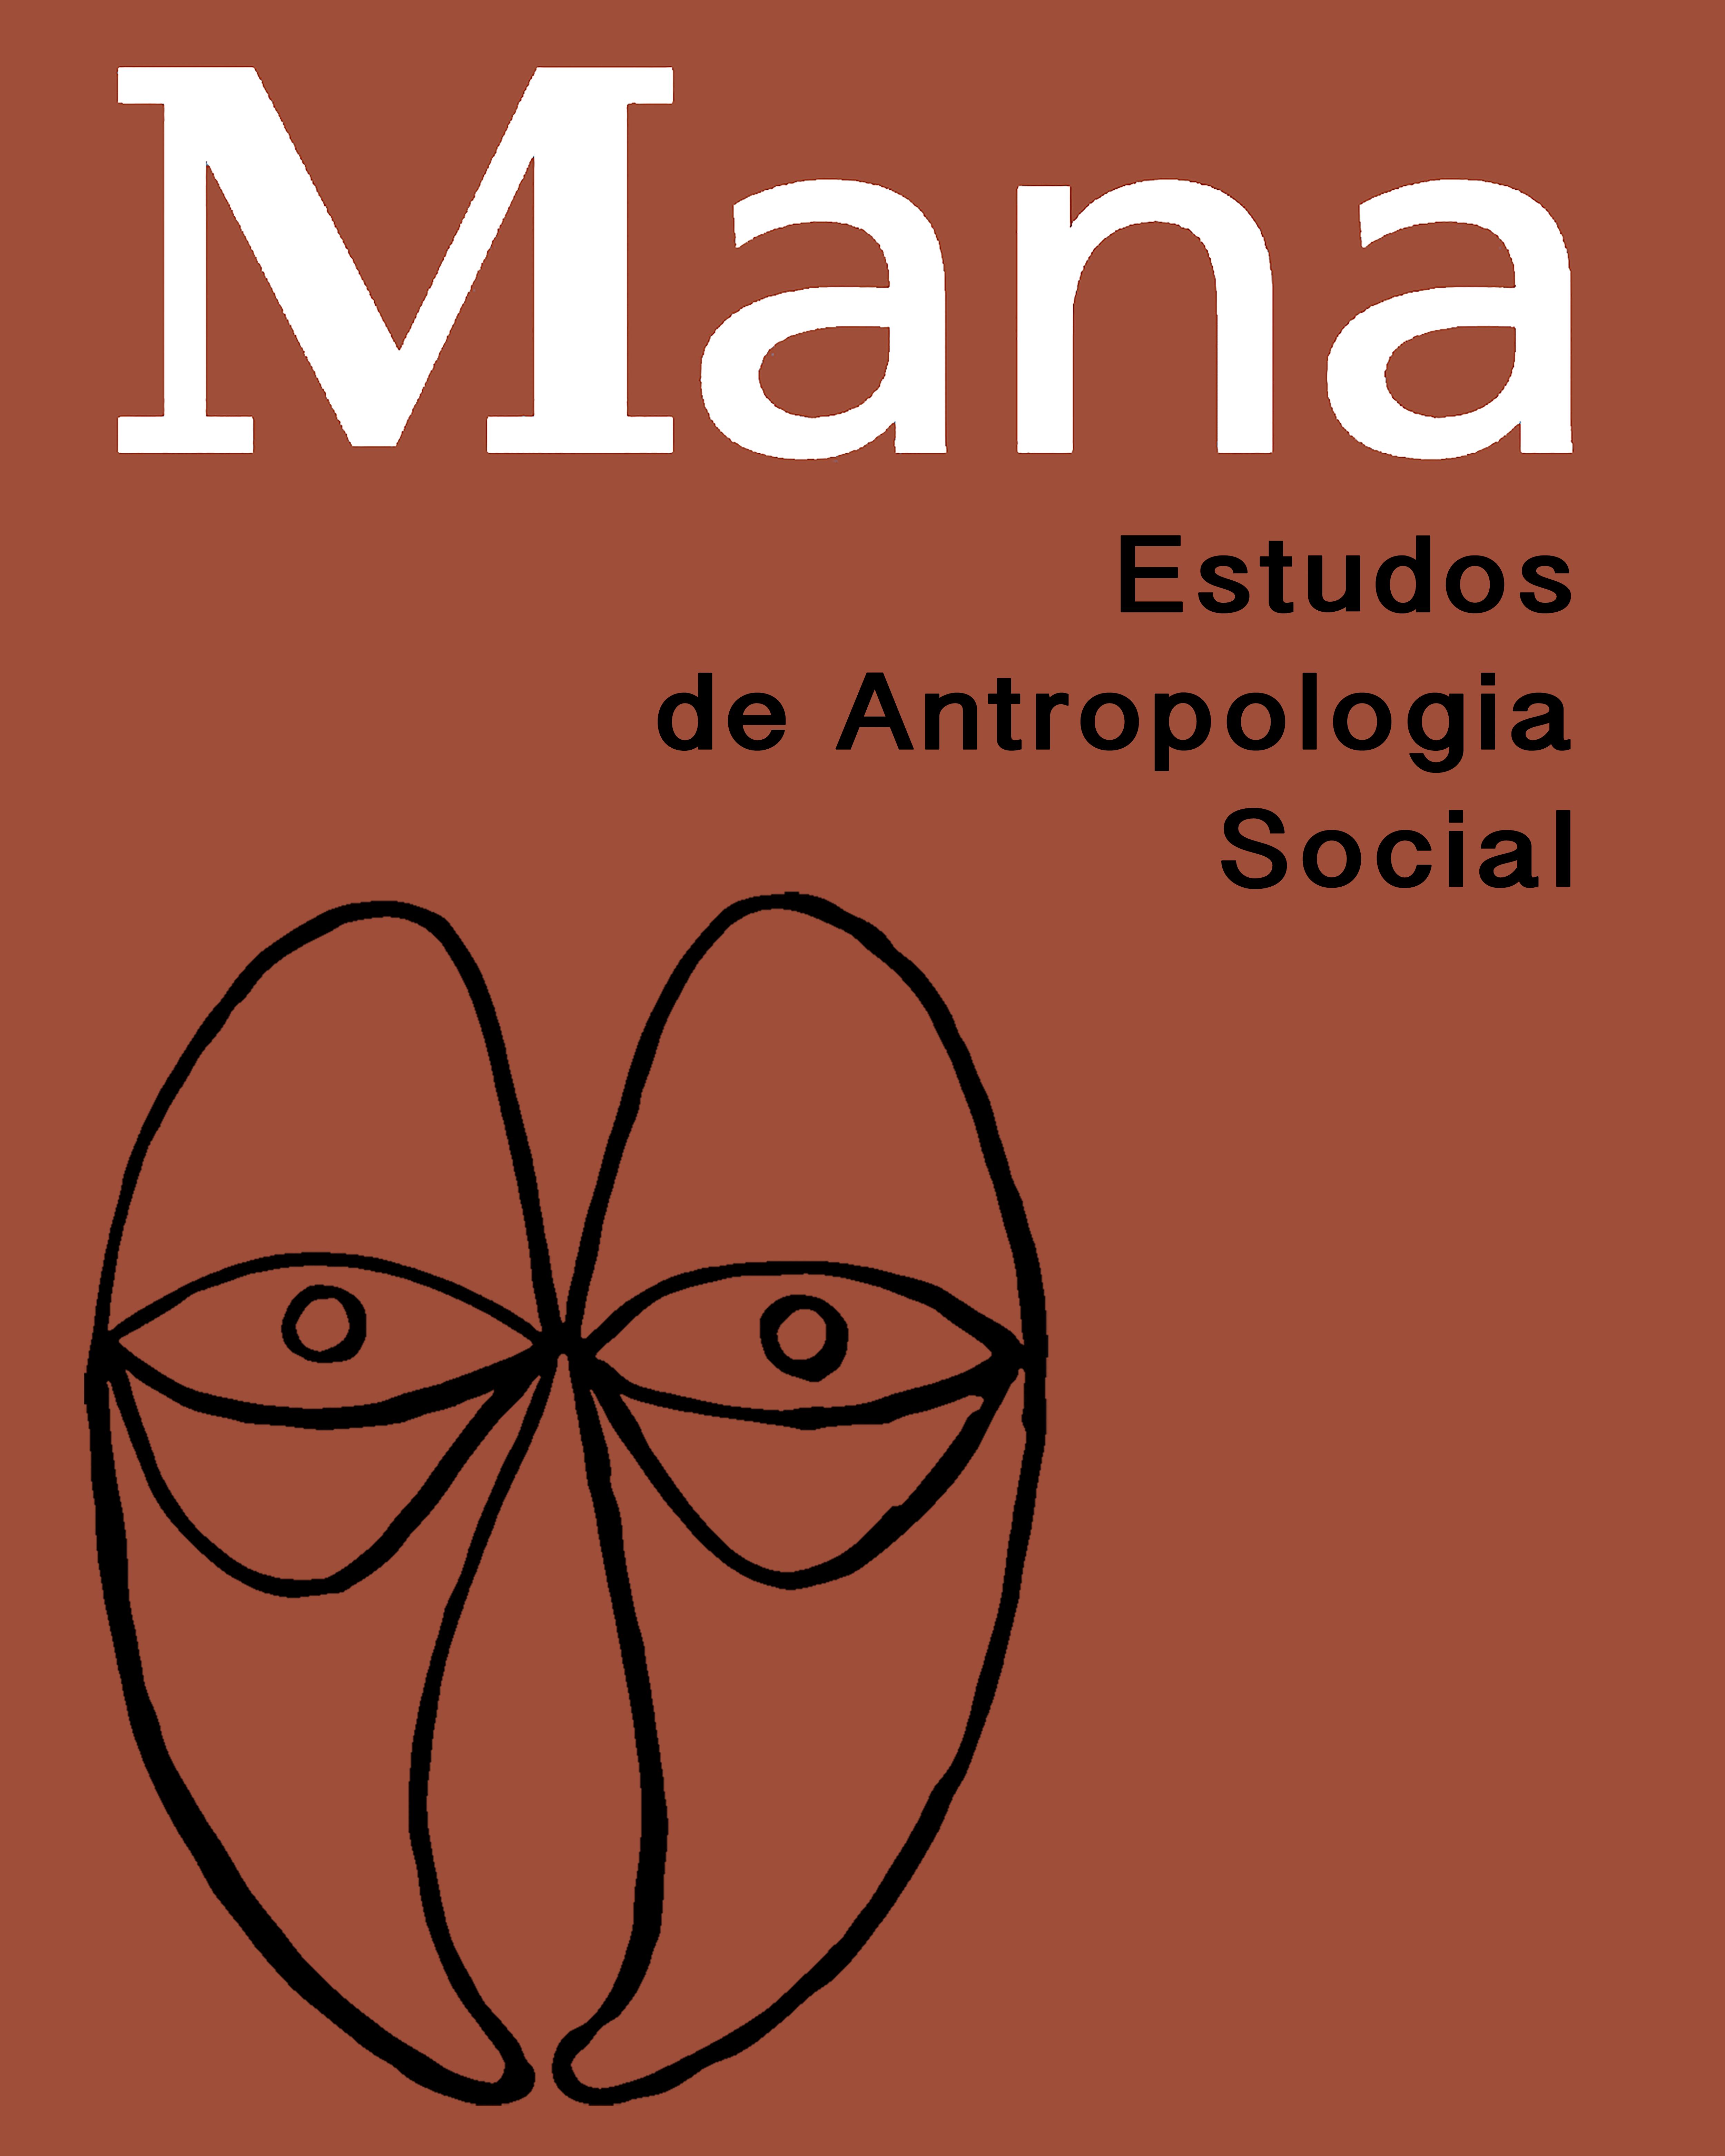 Logomarca do periódico: Mana